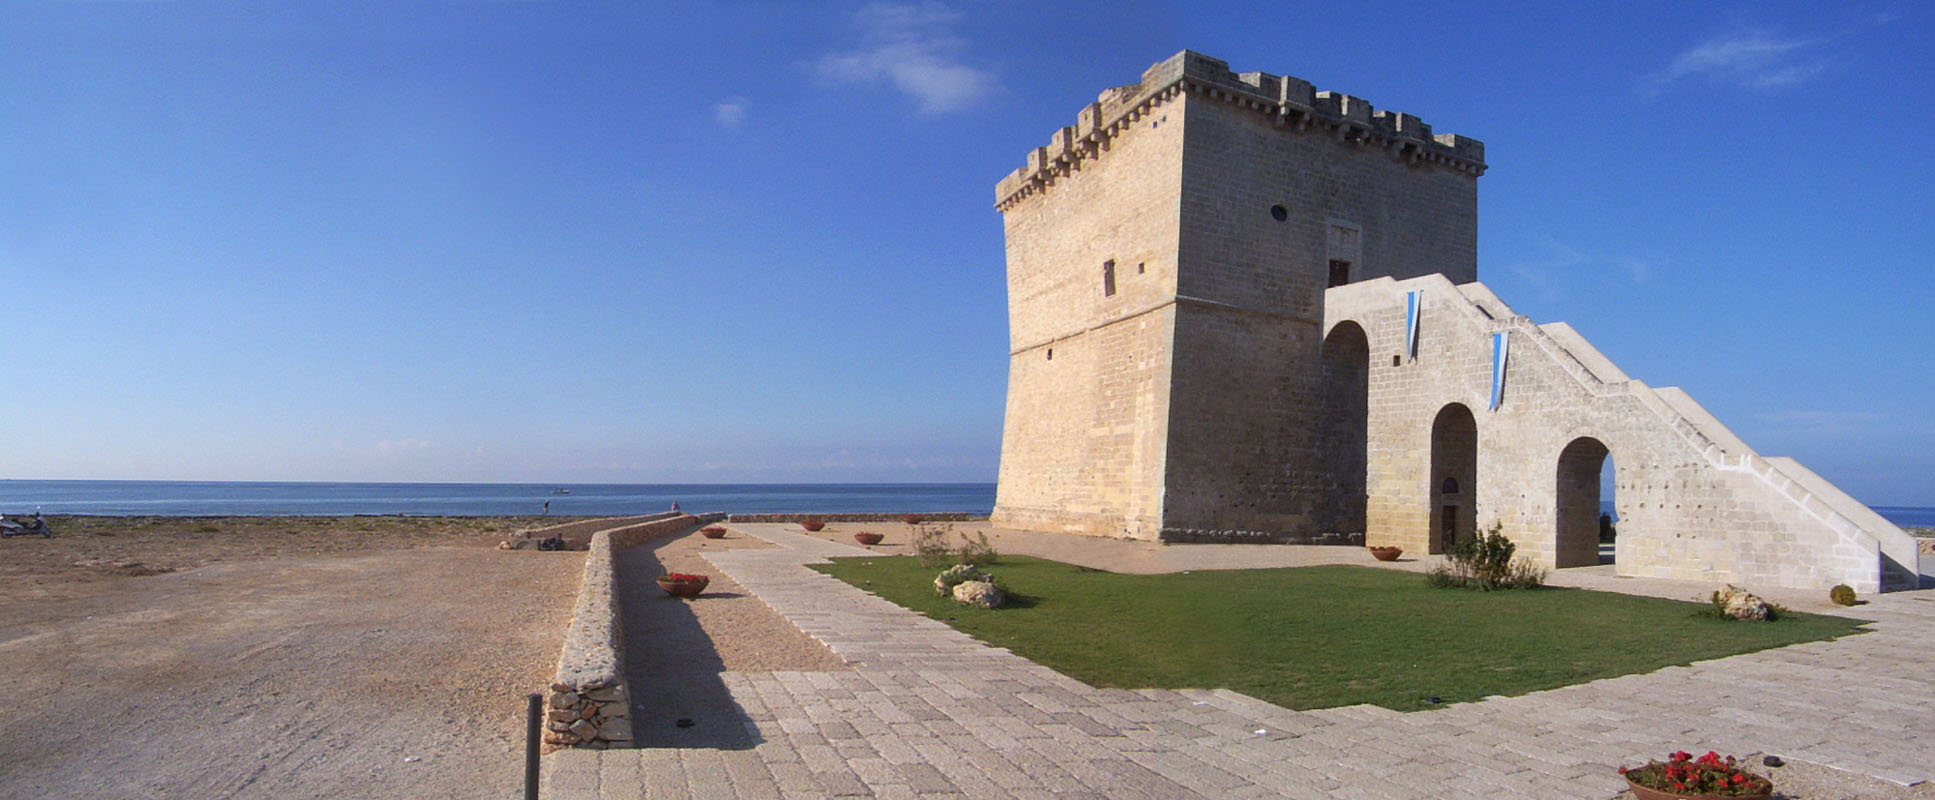 Salentissimo.it: Torre Lapillo -  Torre Lapillo - Porto Cesareo, spiagge del Salento